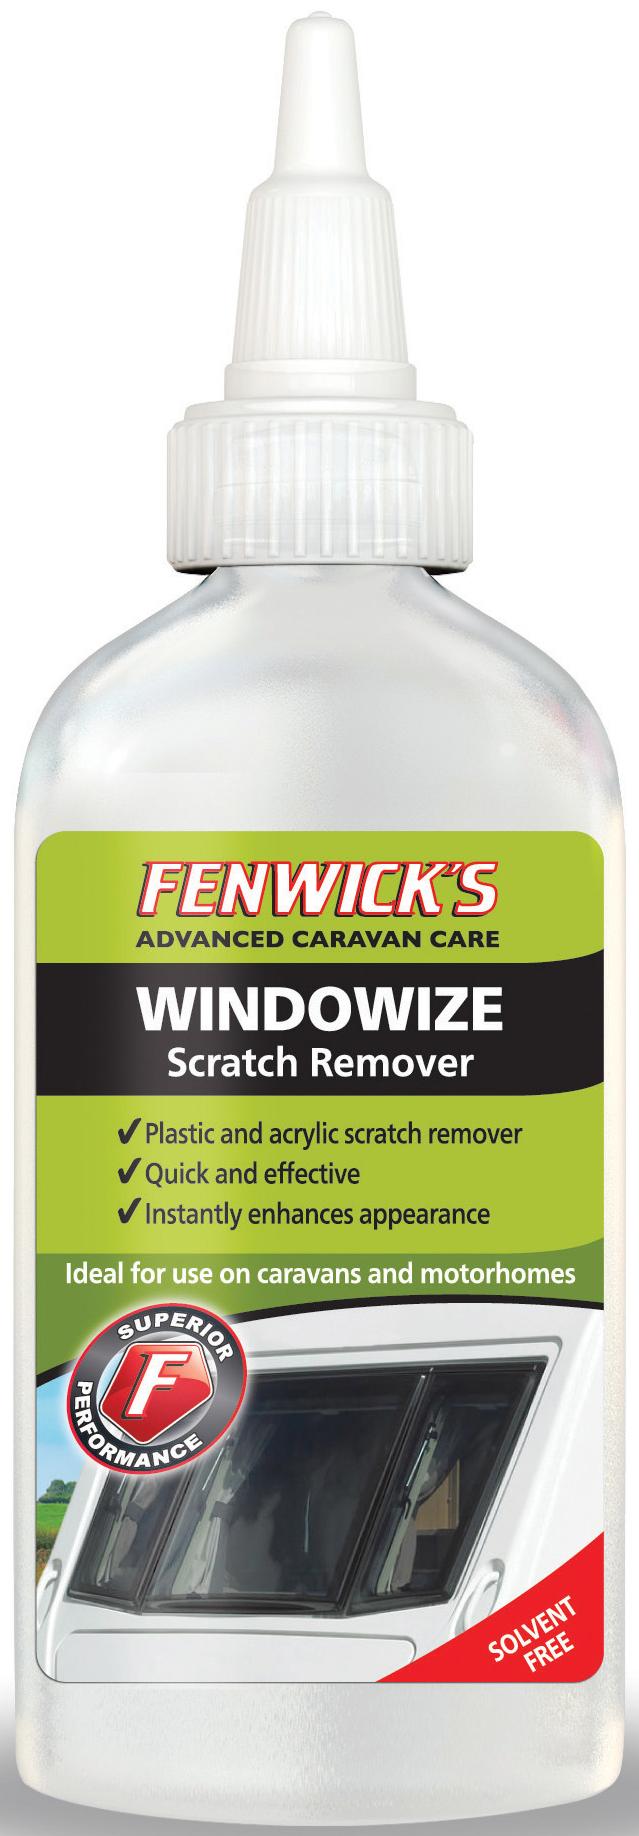 Fenwicks Windowize Scratch Remover 100Ml